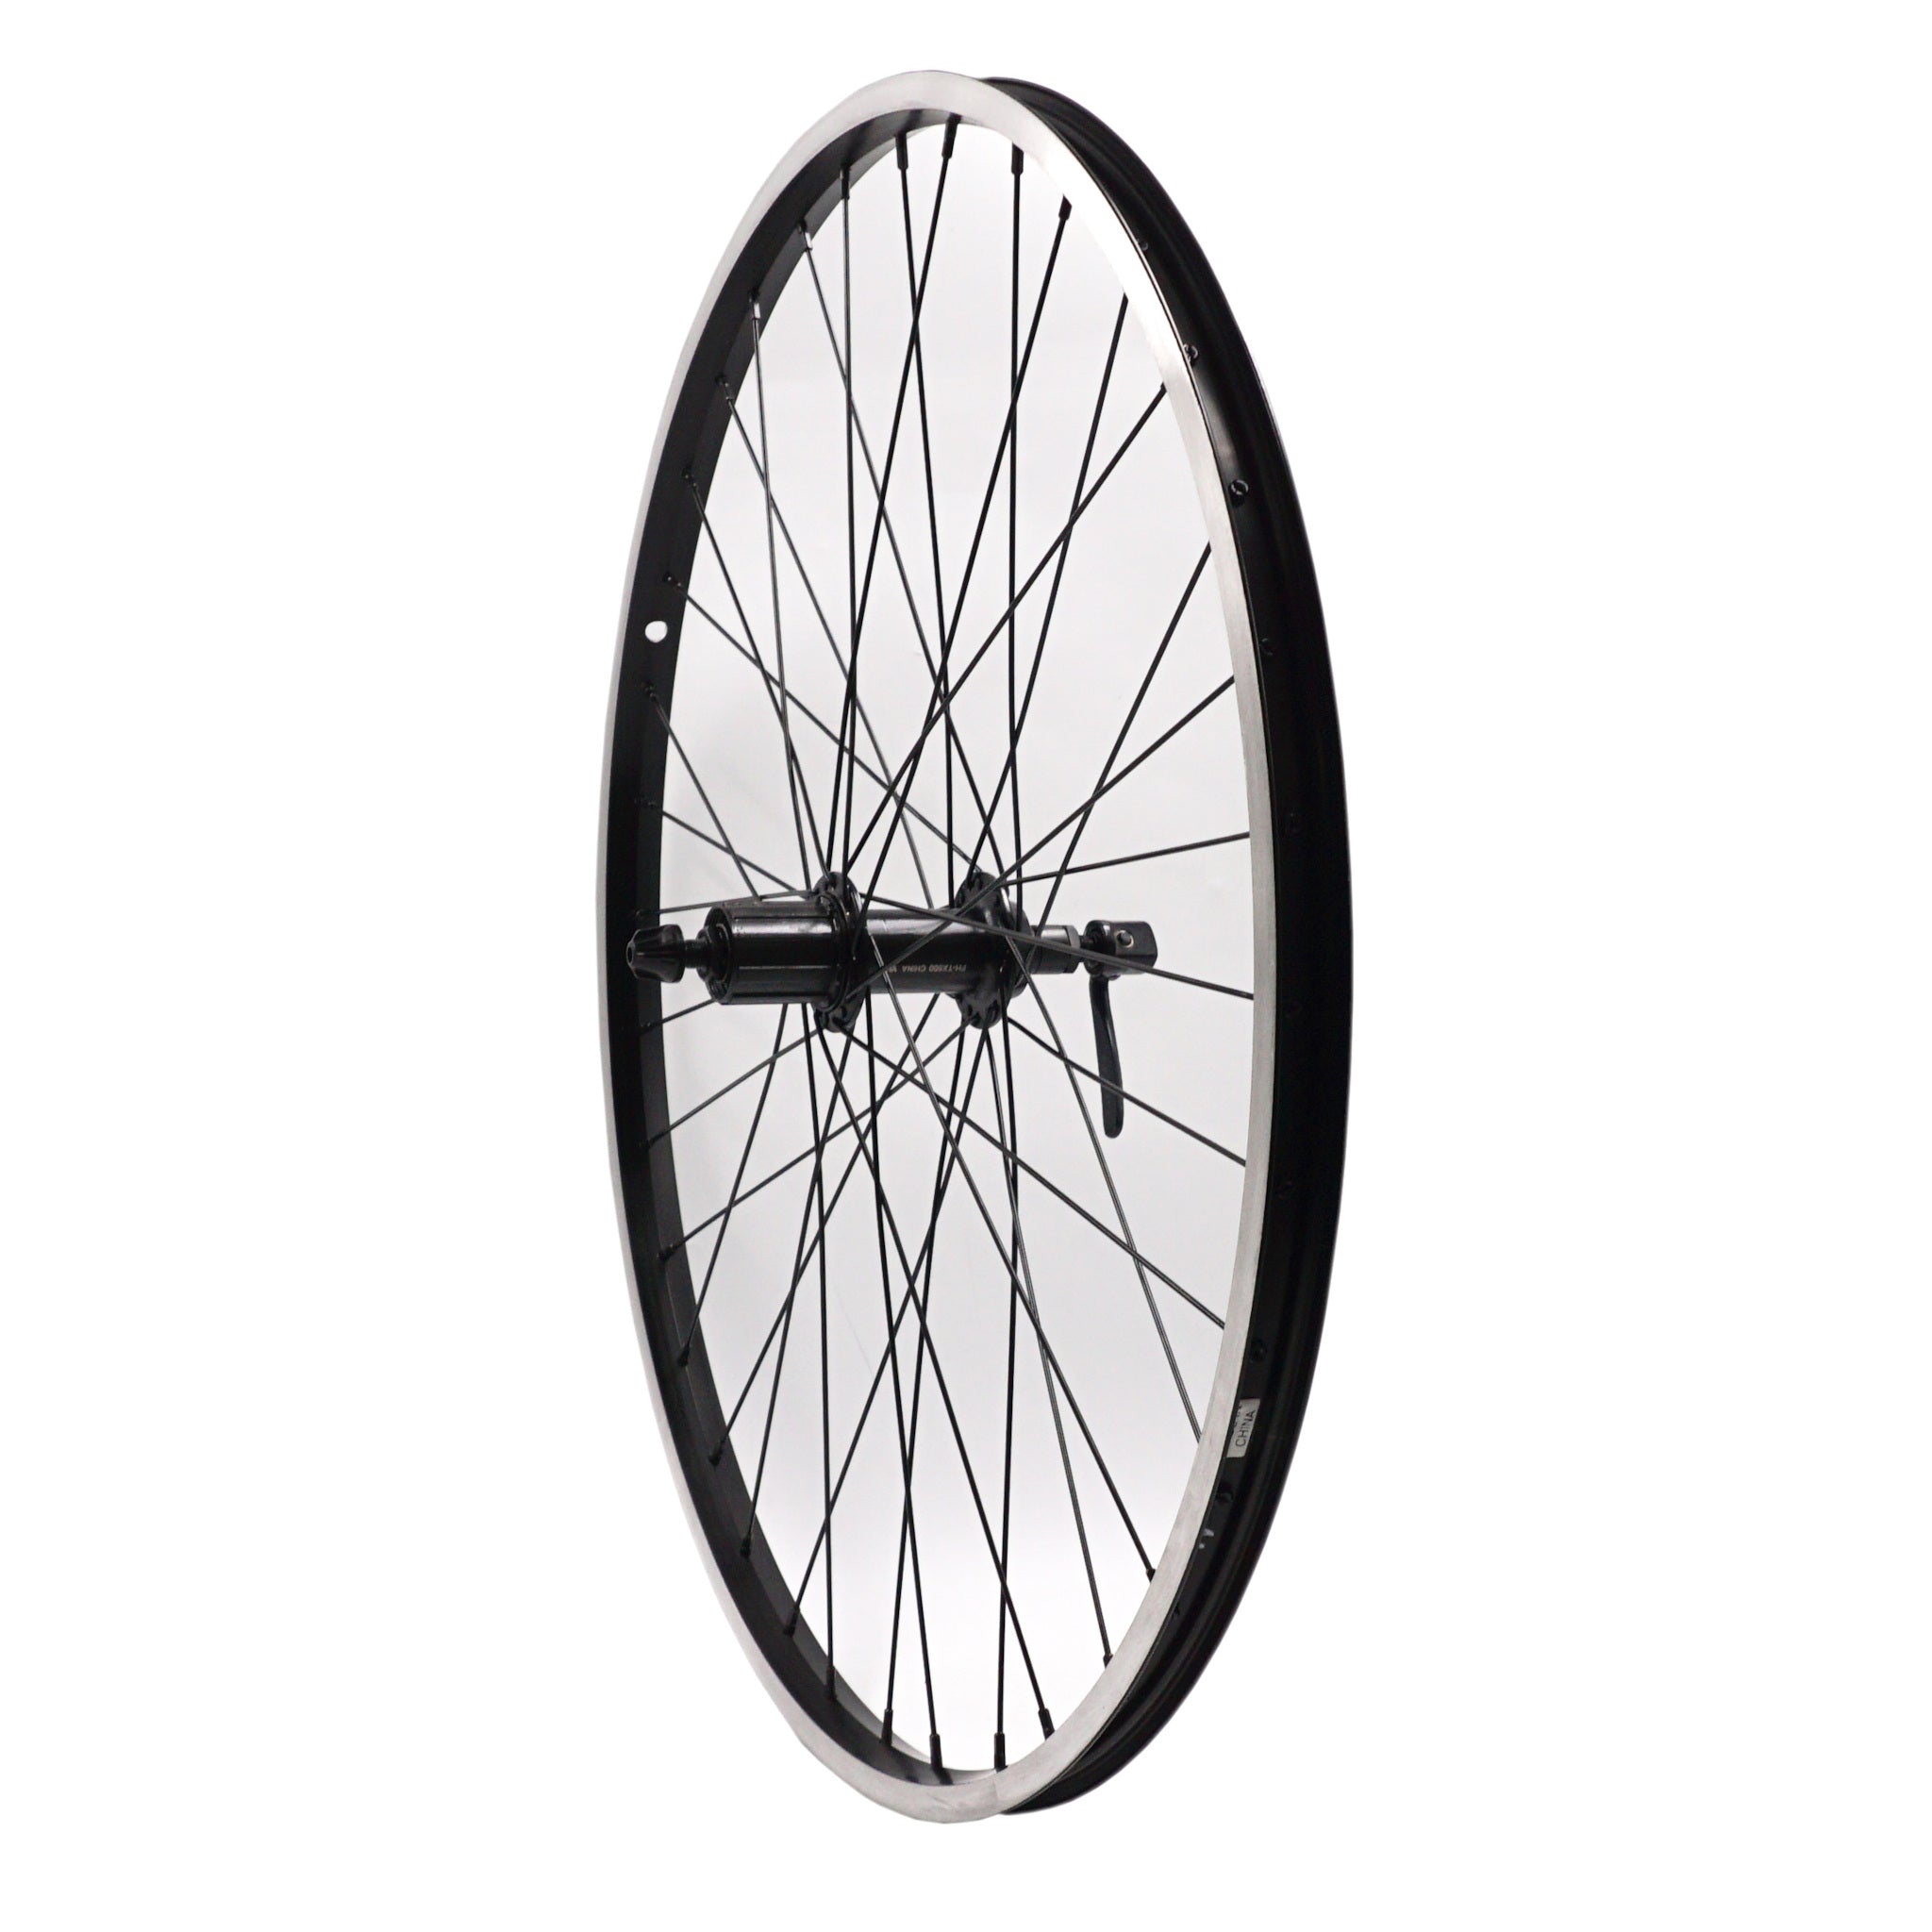 Weinmann 519 26-inch Rear Mountain Bike Shimano HG Cassette Type Rear Wheel